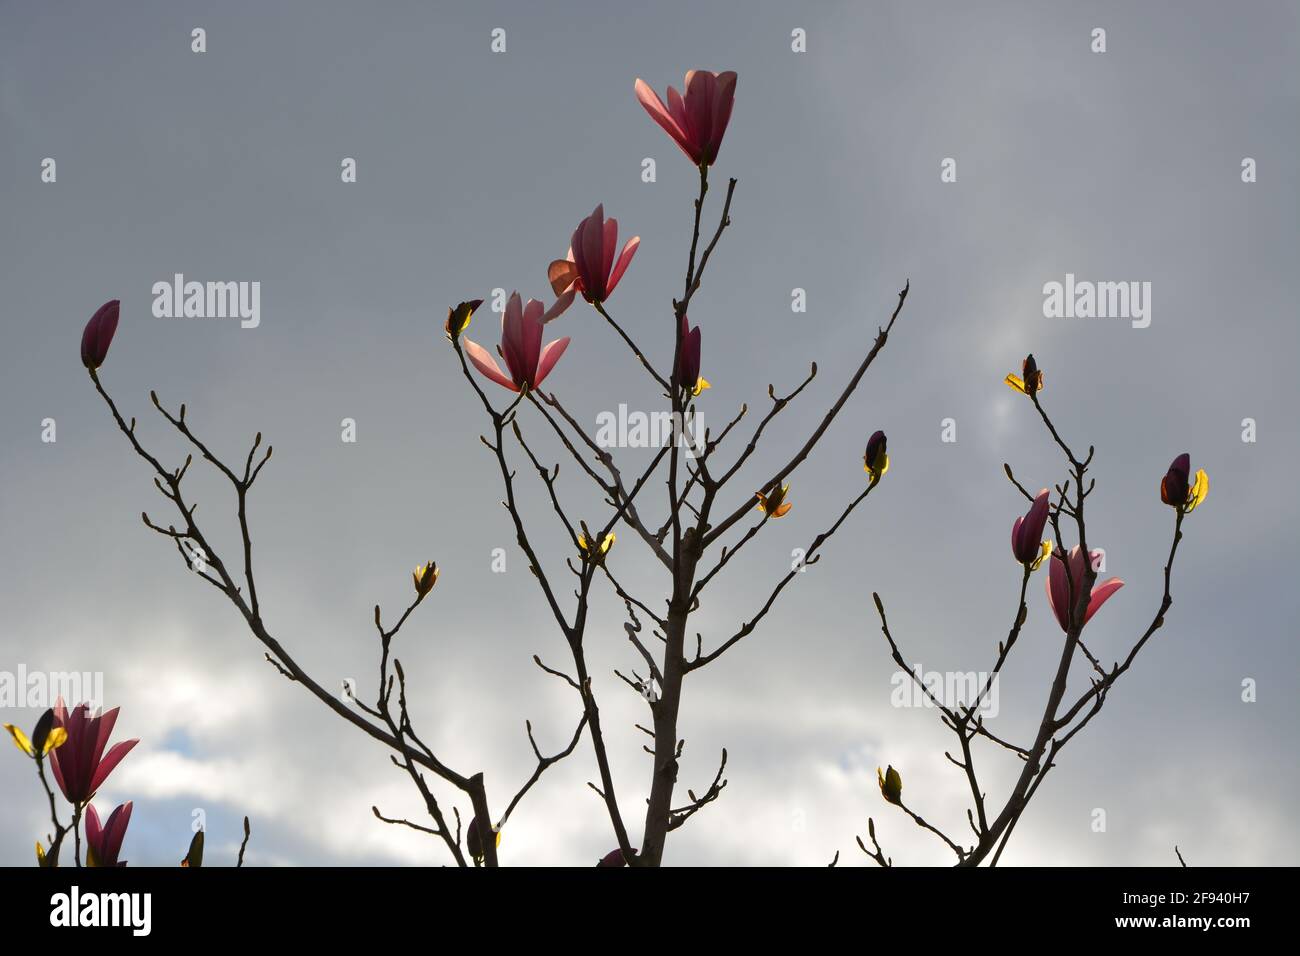 Petit arbre rose magnolia buisson dans le soleil en fleur dans un parc High Resolution stock photo, DSLR Banque D'Images